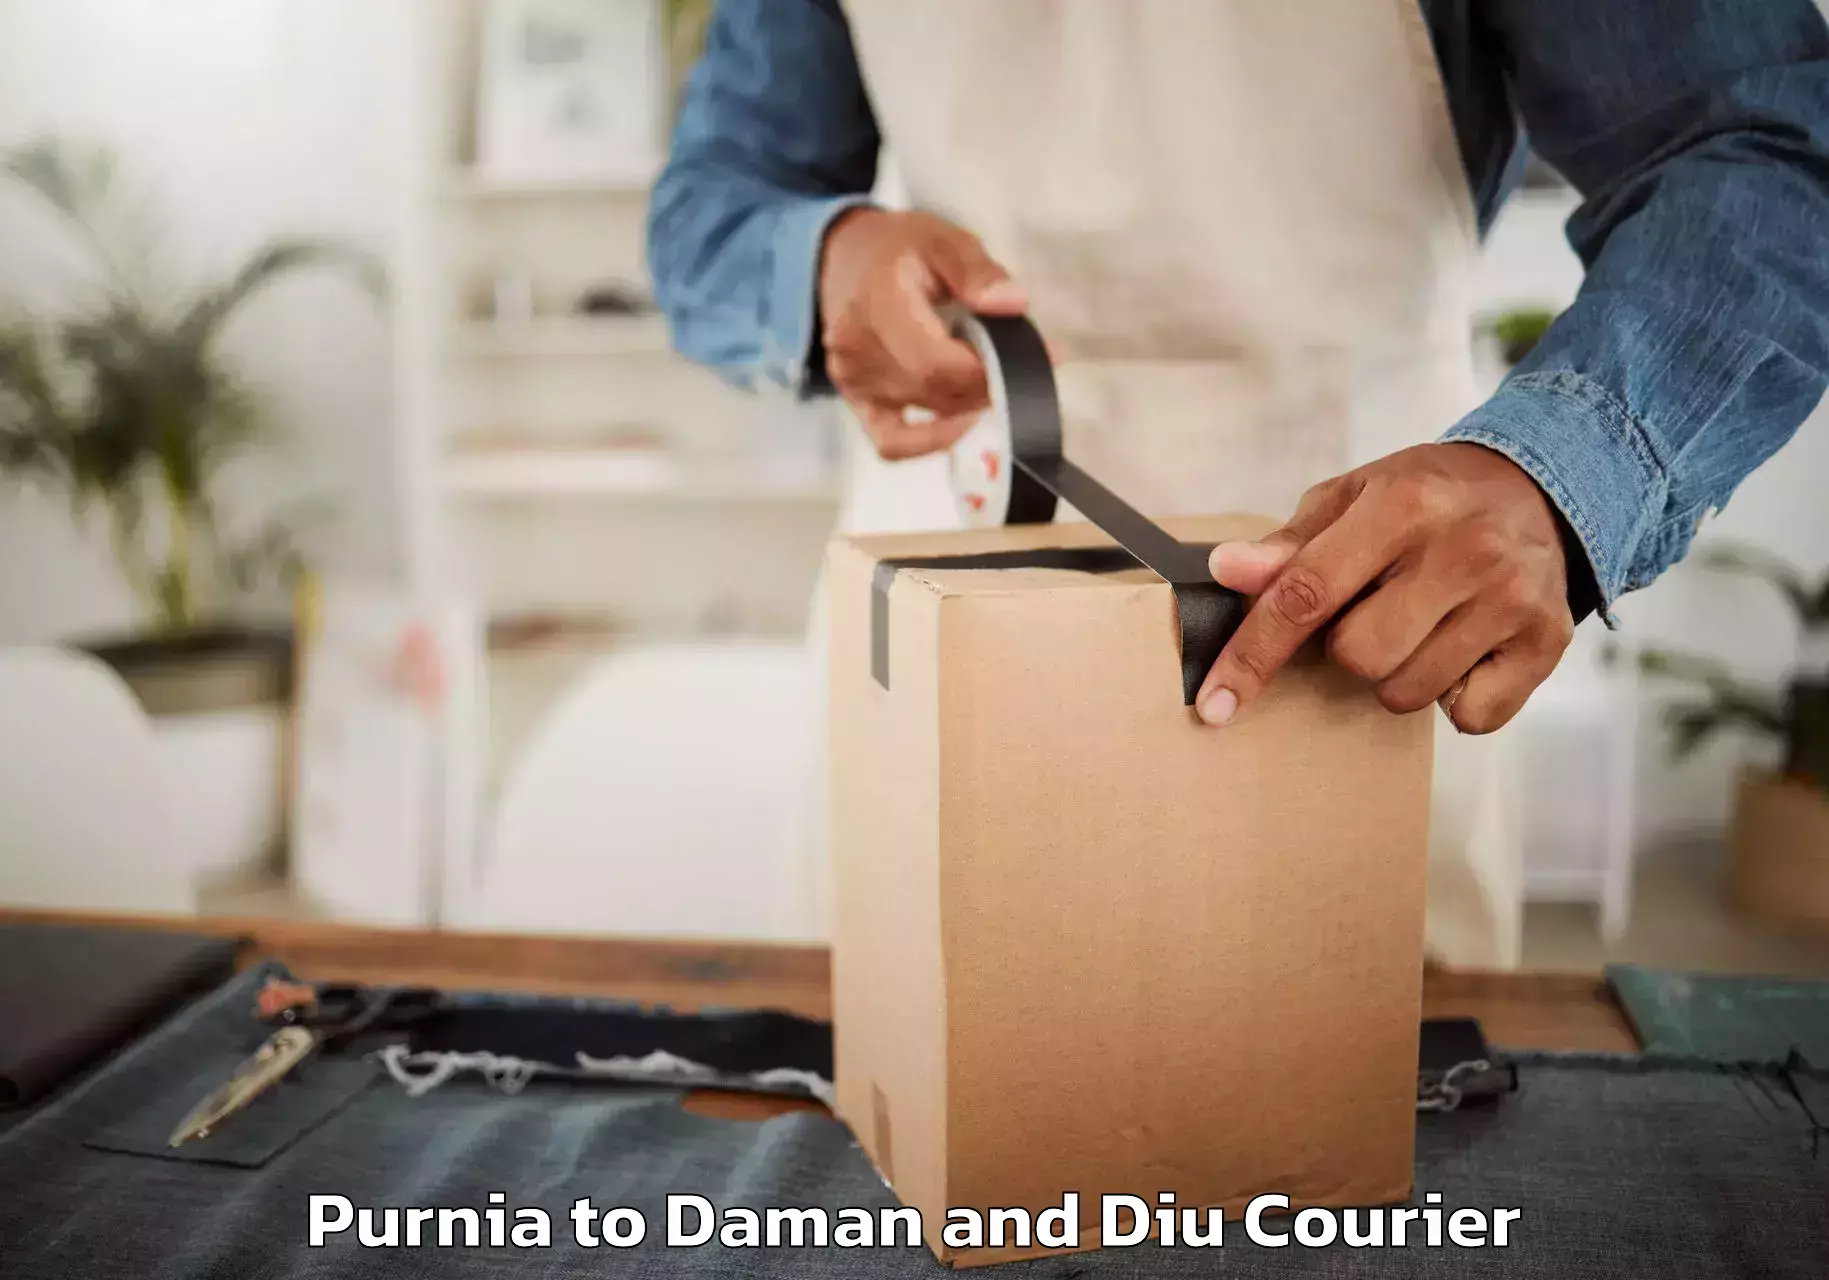 Furniture transport solutions in Purnia to Diu